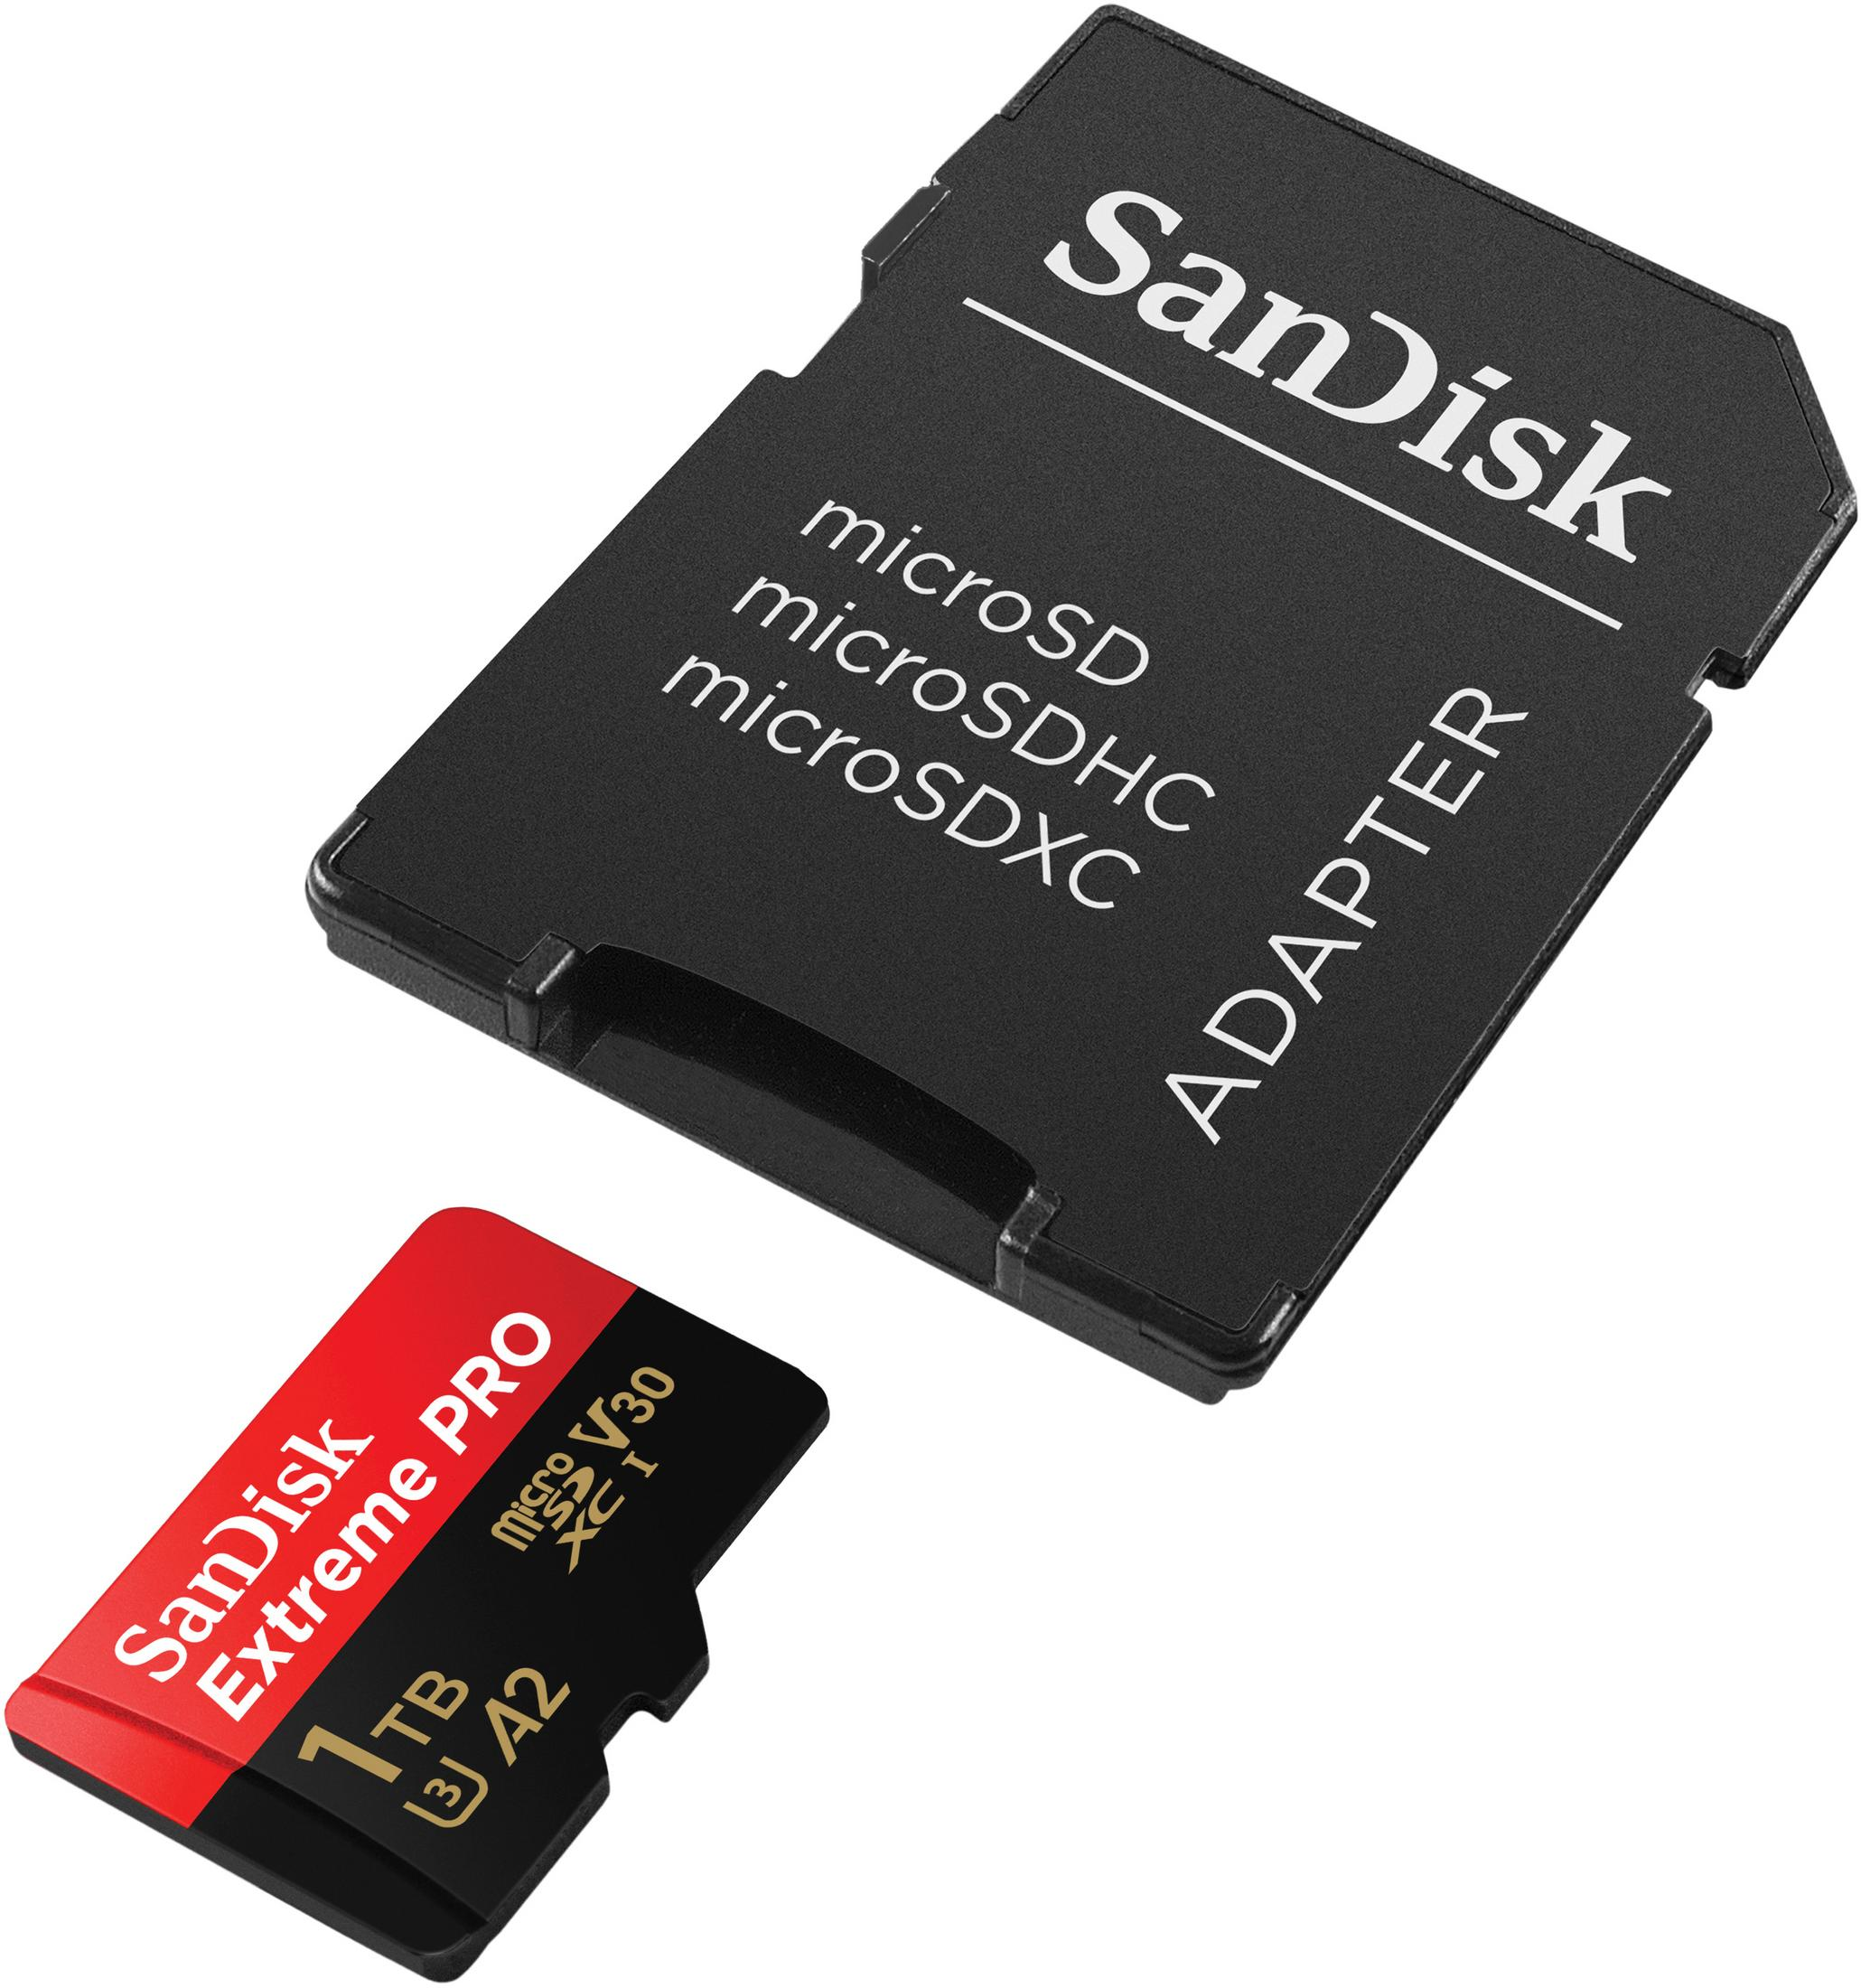 EXTR. PRO, Micro-SDXC MB/s MSDXC 1 170 TB, Handyspeicherkarte, SDSQXCZ-1T00-GN6MA SANDISK